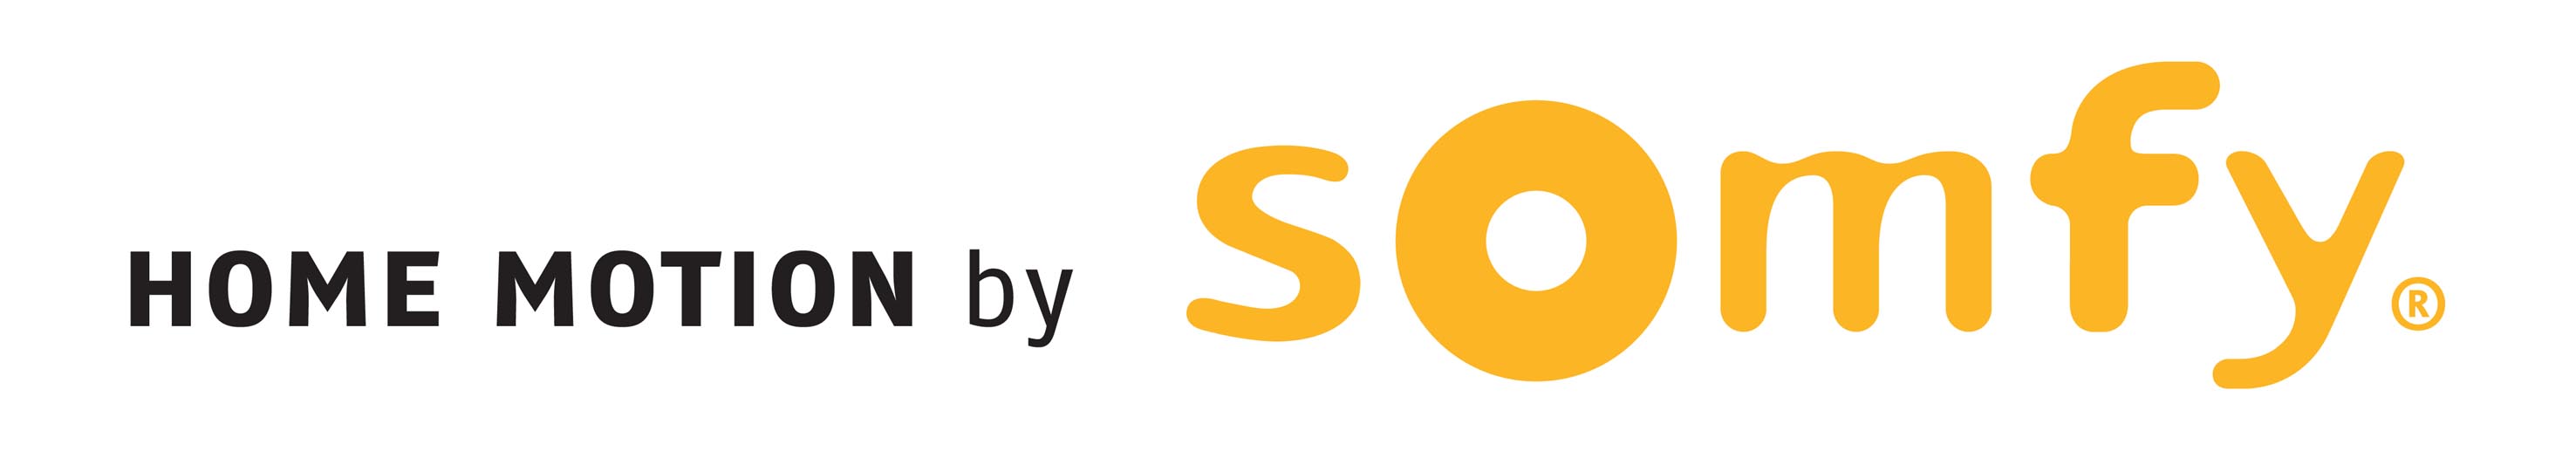 Somfy-logo